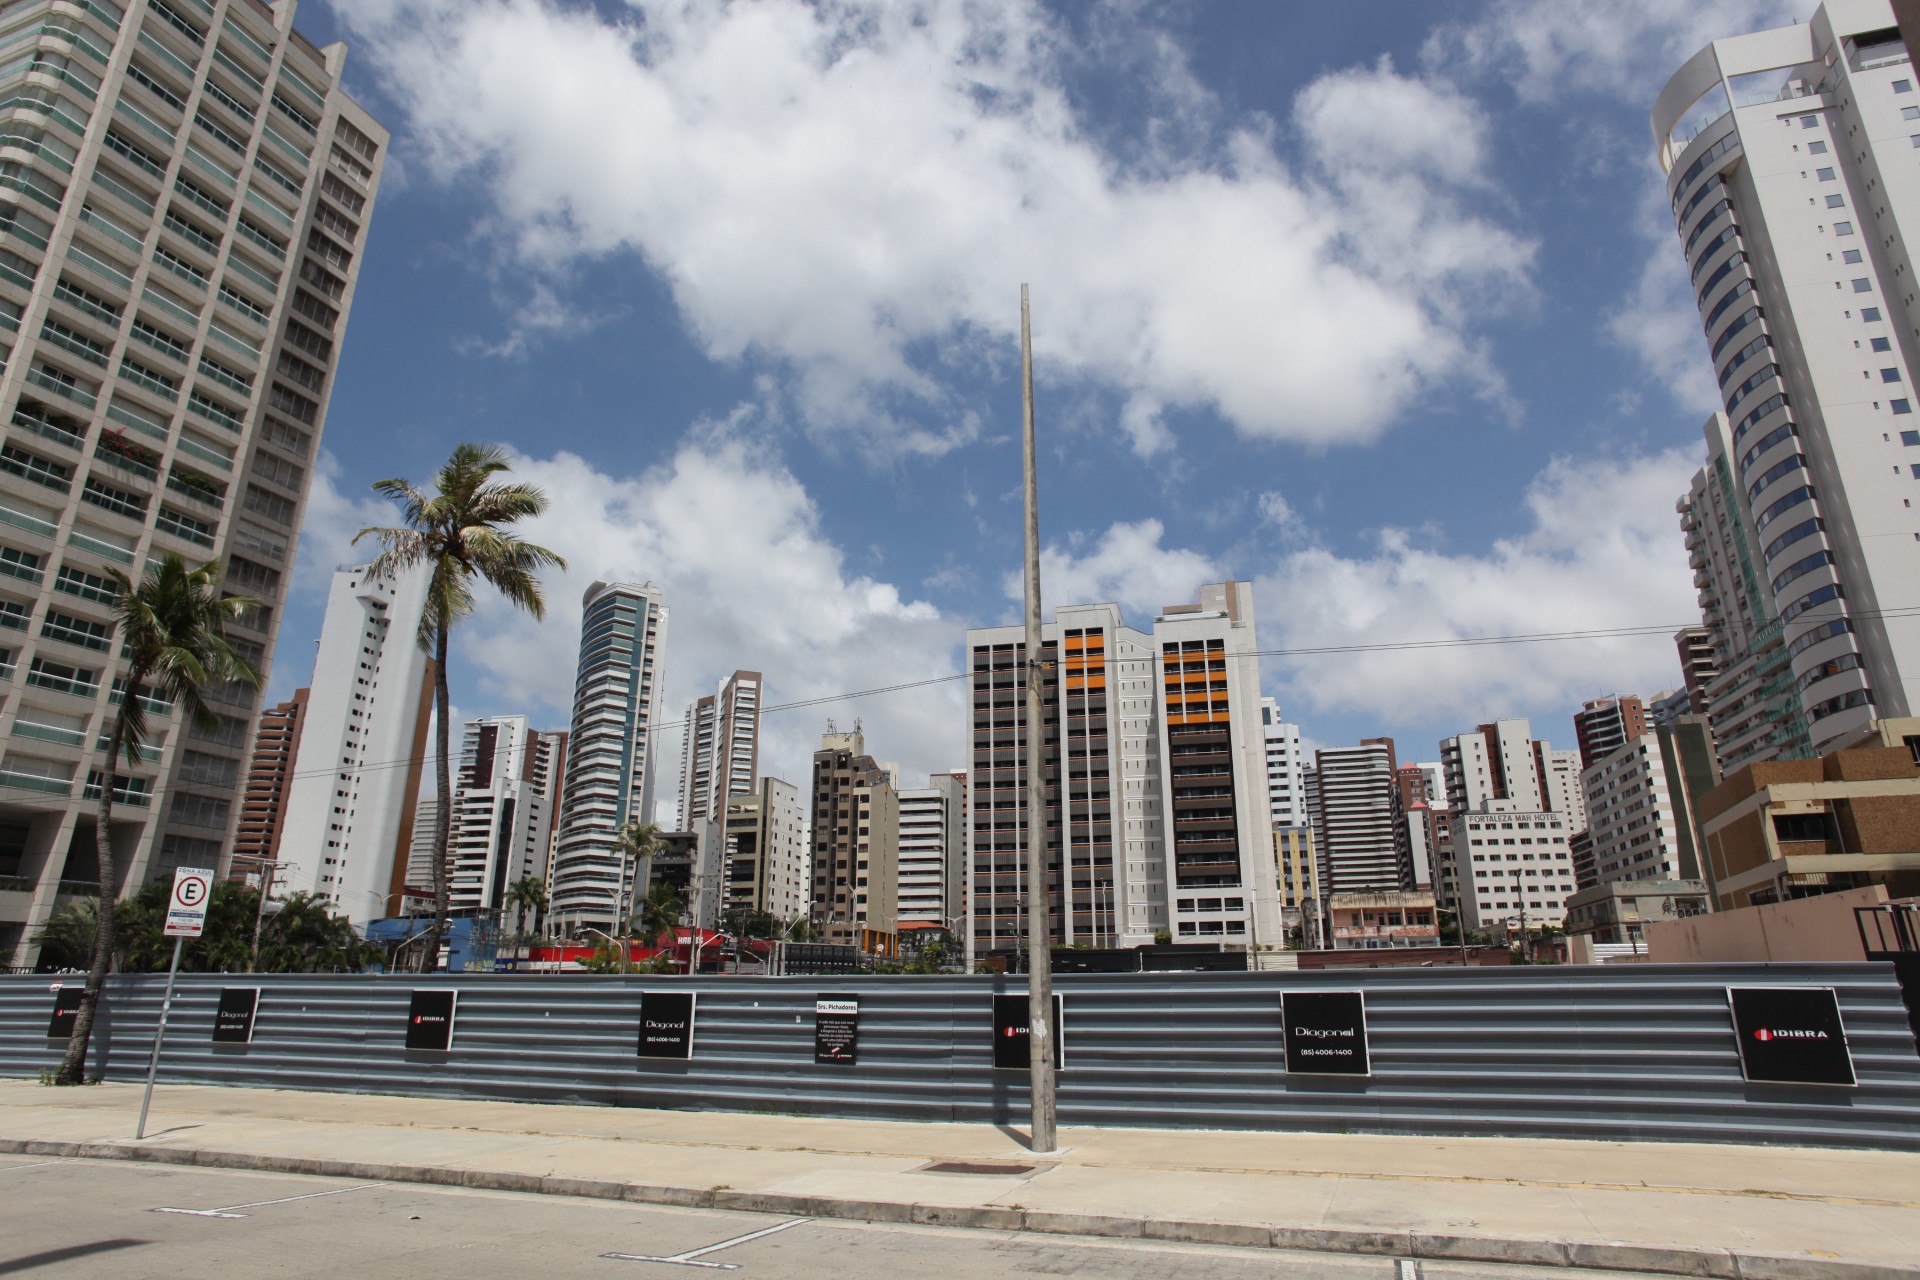 Terreno onde será construído o maior prédio de Fortaleza, na avenida Beira Mar, cuja altura pode chegar a 170,63 metros (Foto: FÁBIO LIMA)